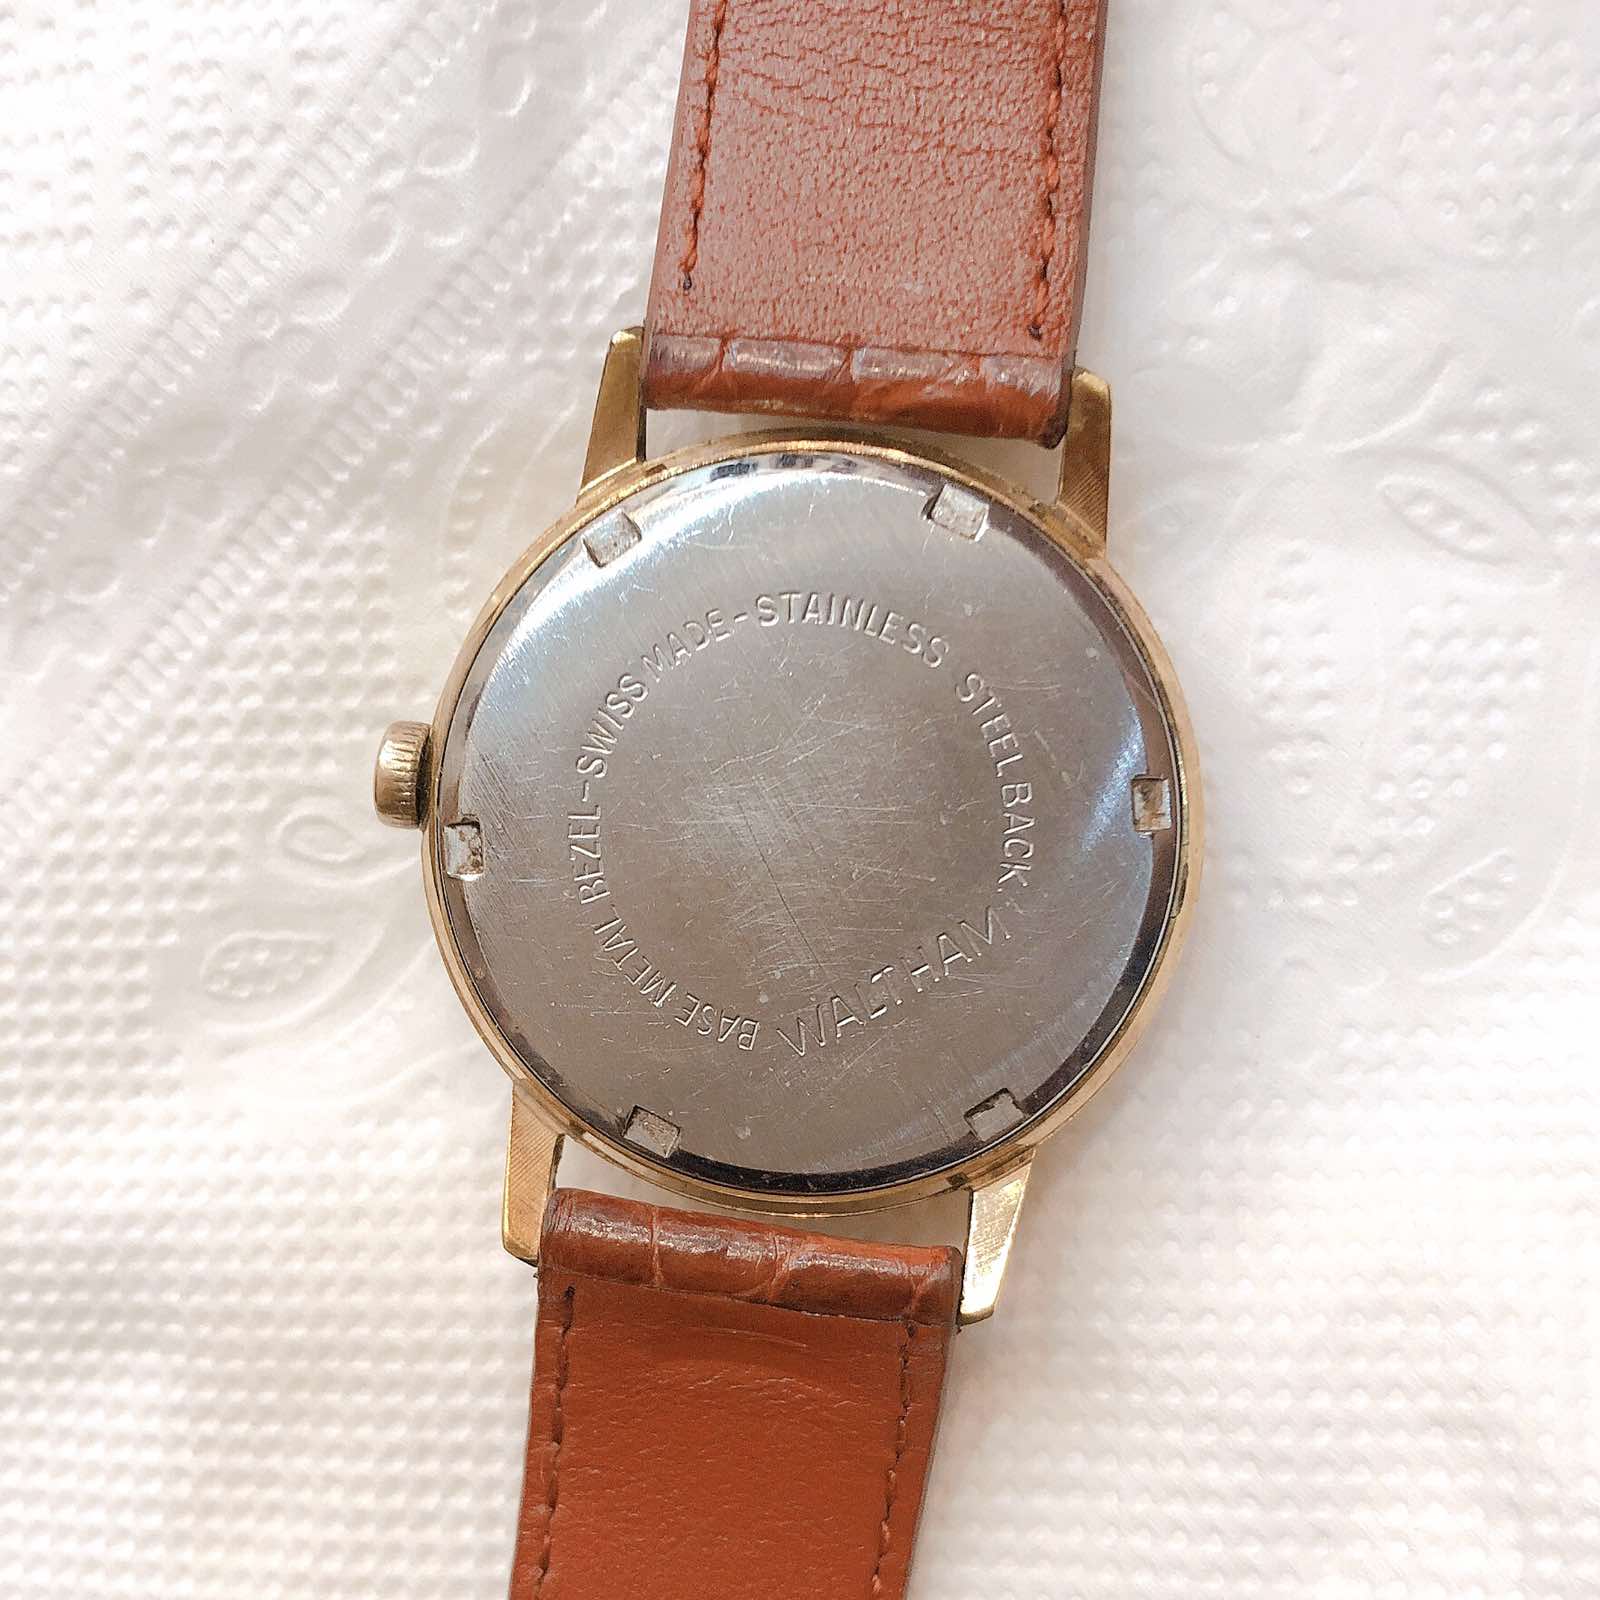 Đồng hồ cổ Waltham ld lên dây LACKE 18k chính hãng Thụy Sỹ